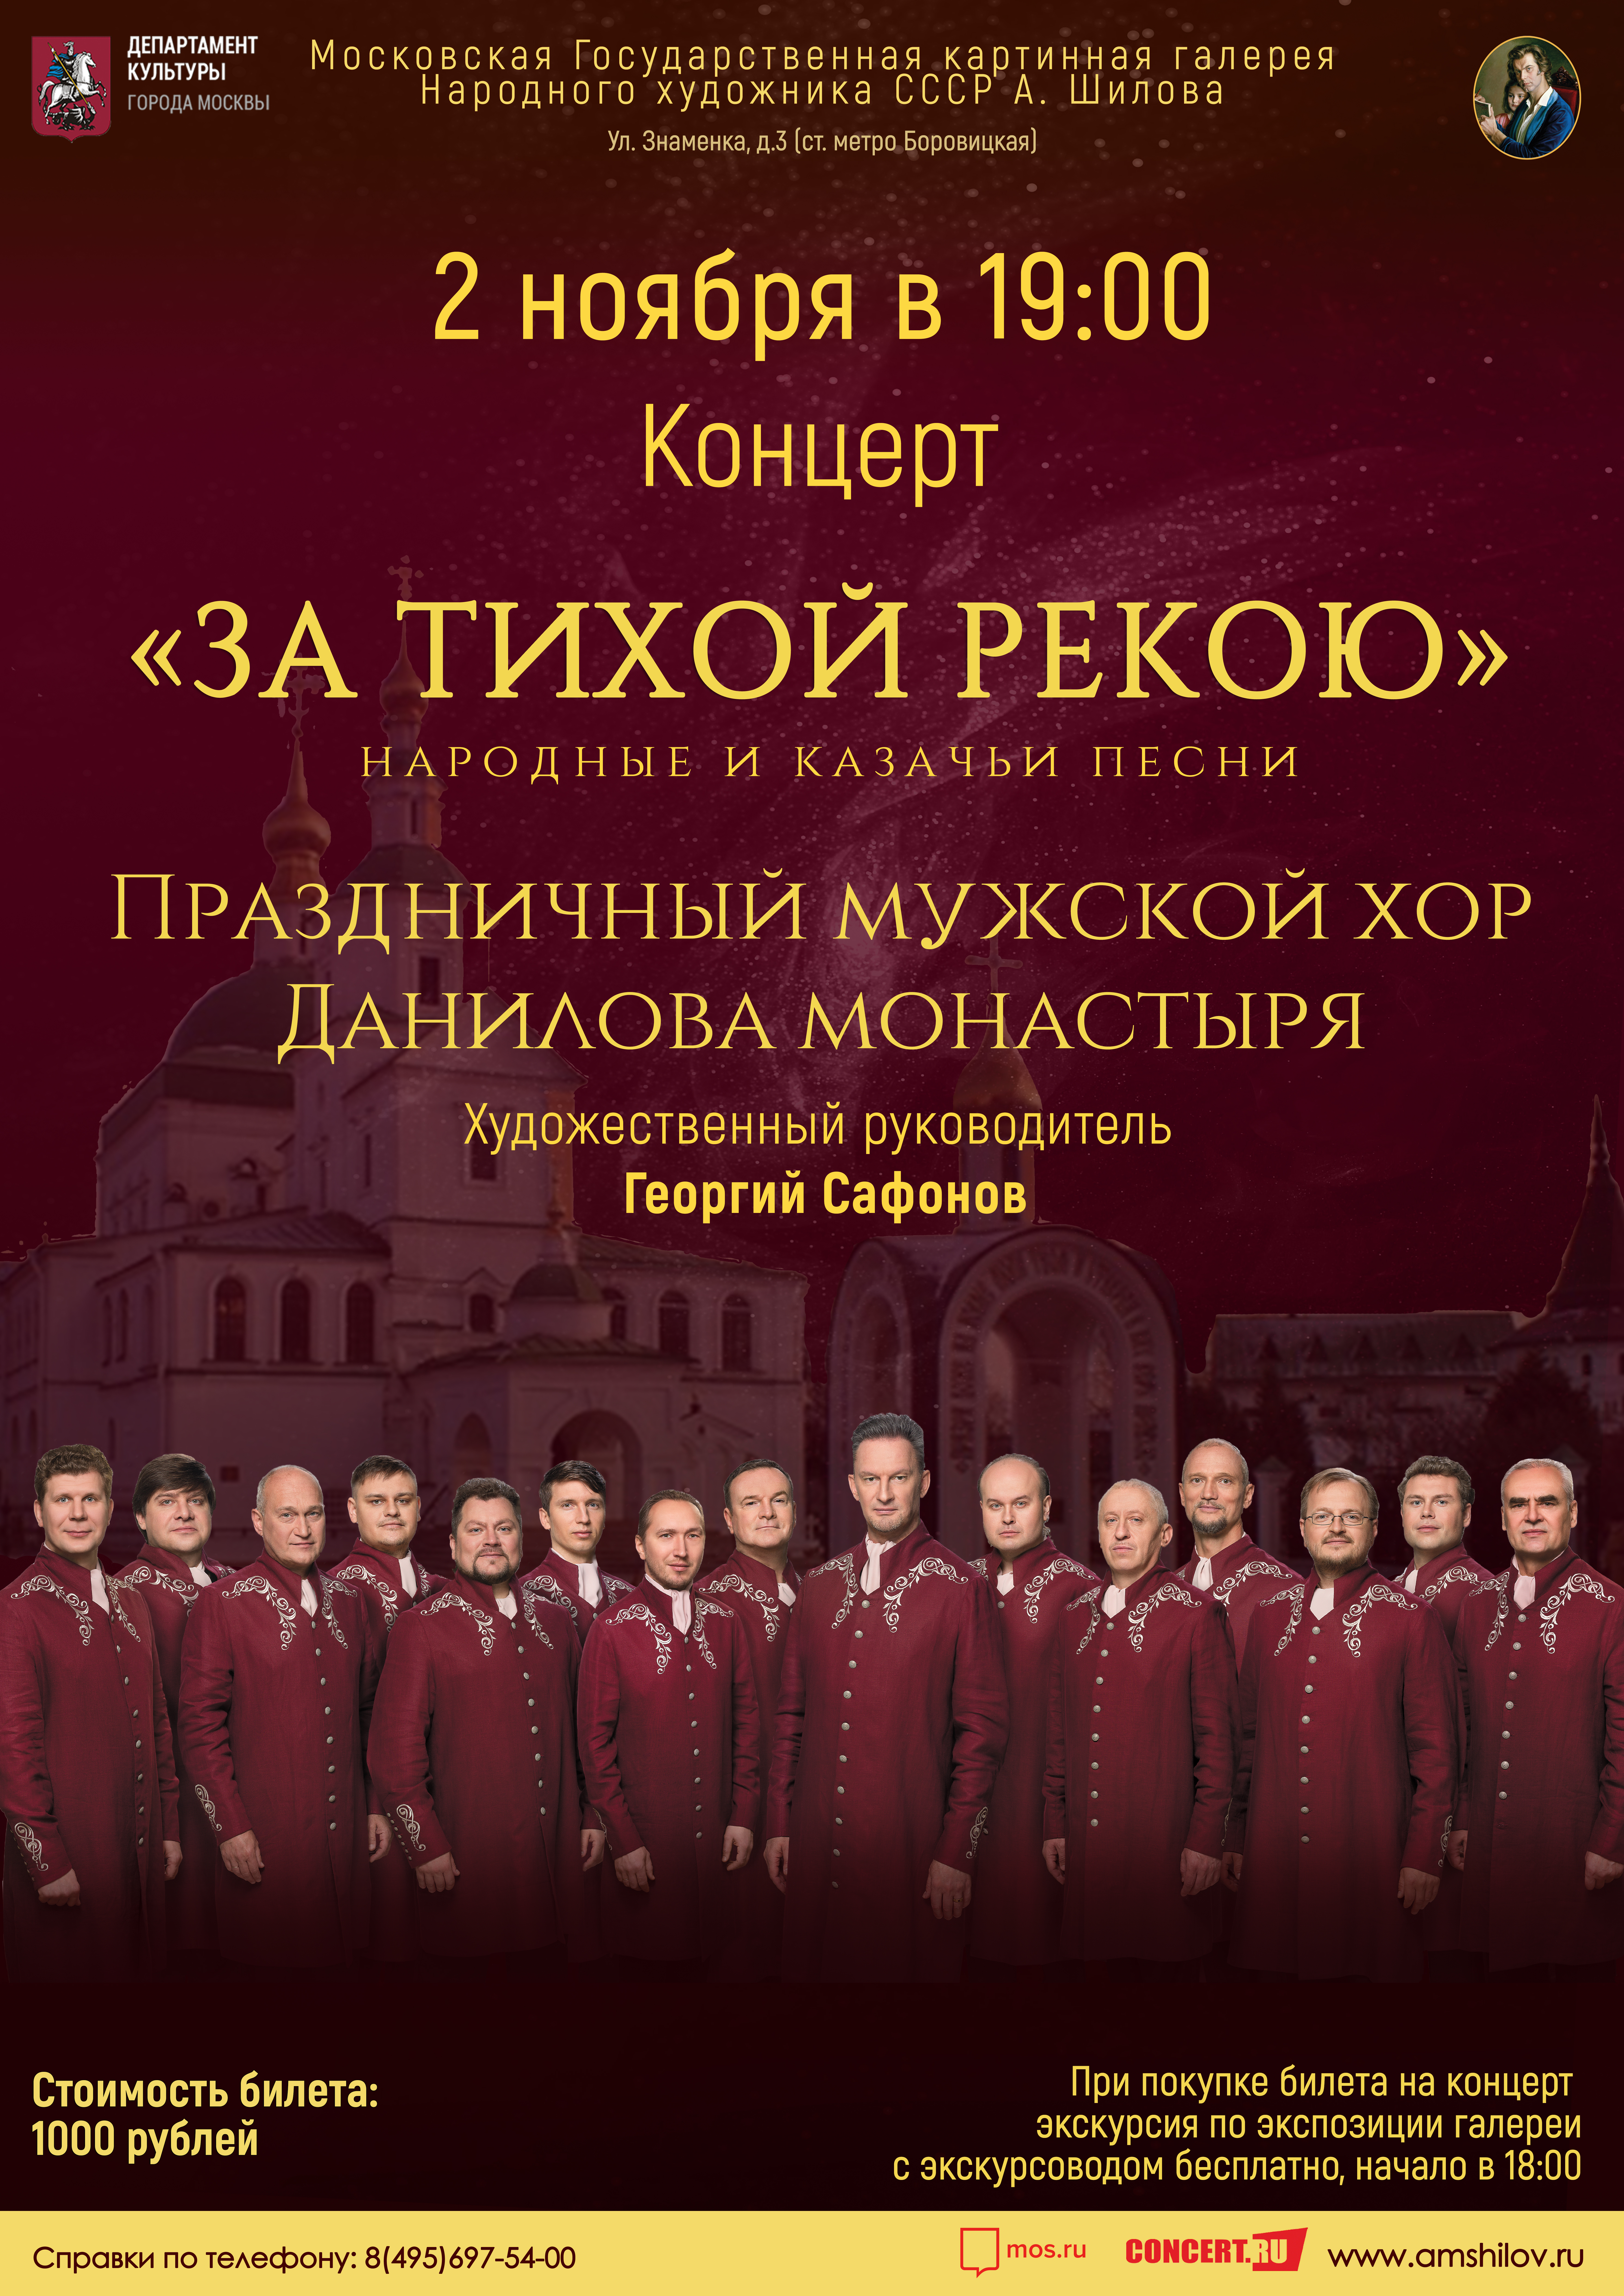 Концерт «За тихой рекою» Праздничного мужского хора Московского Данилова монастыря